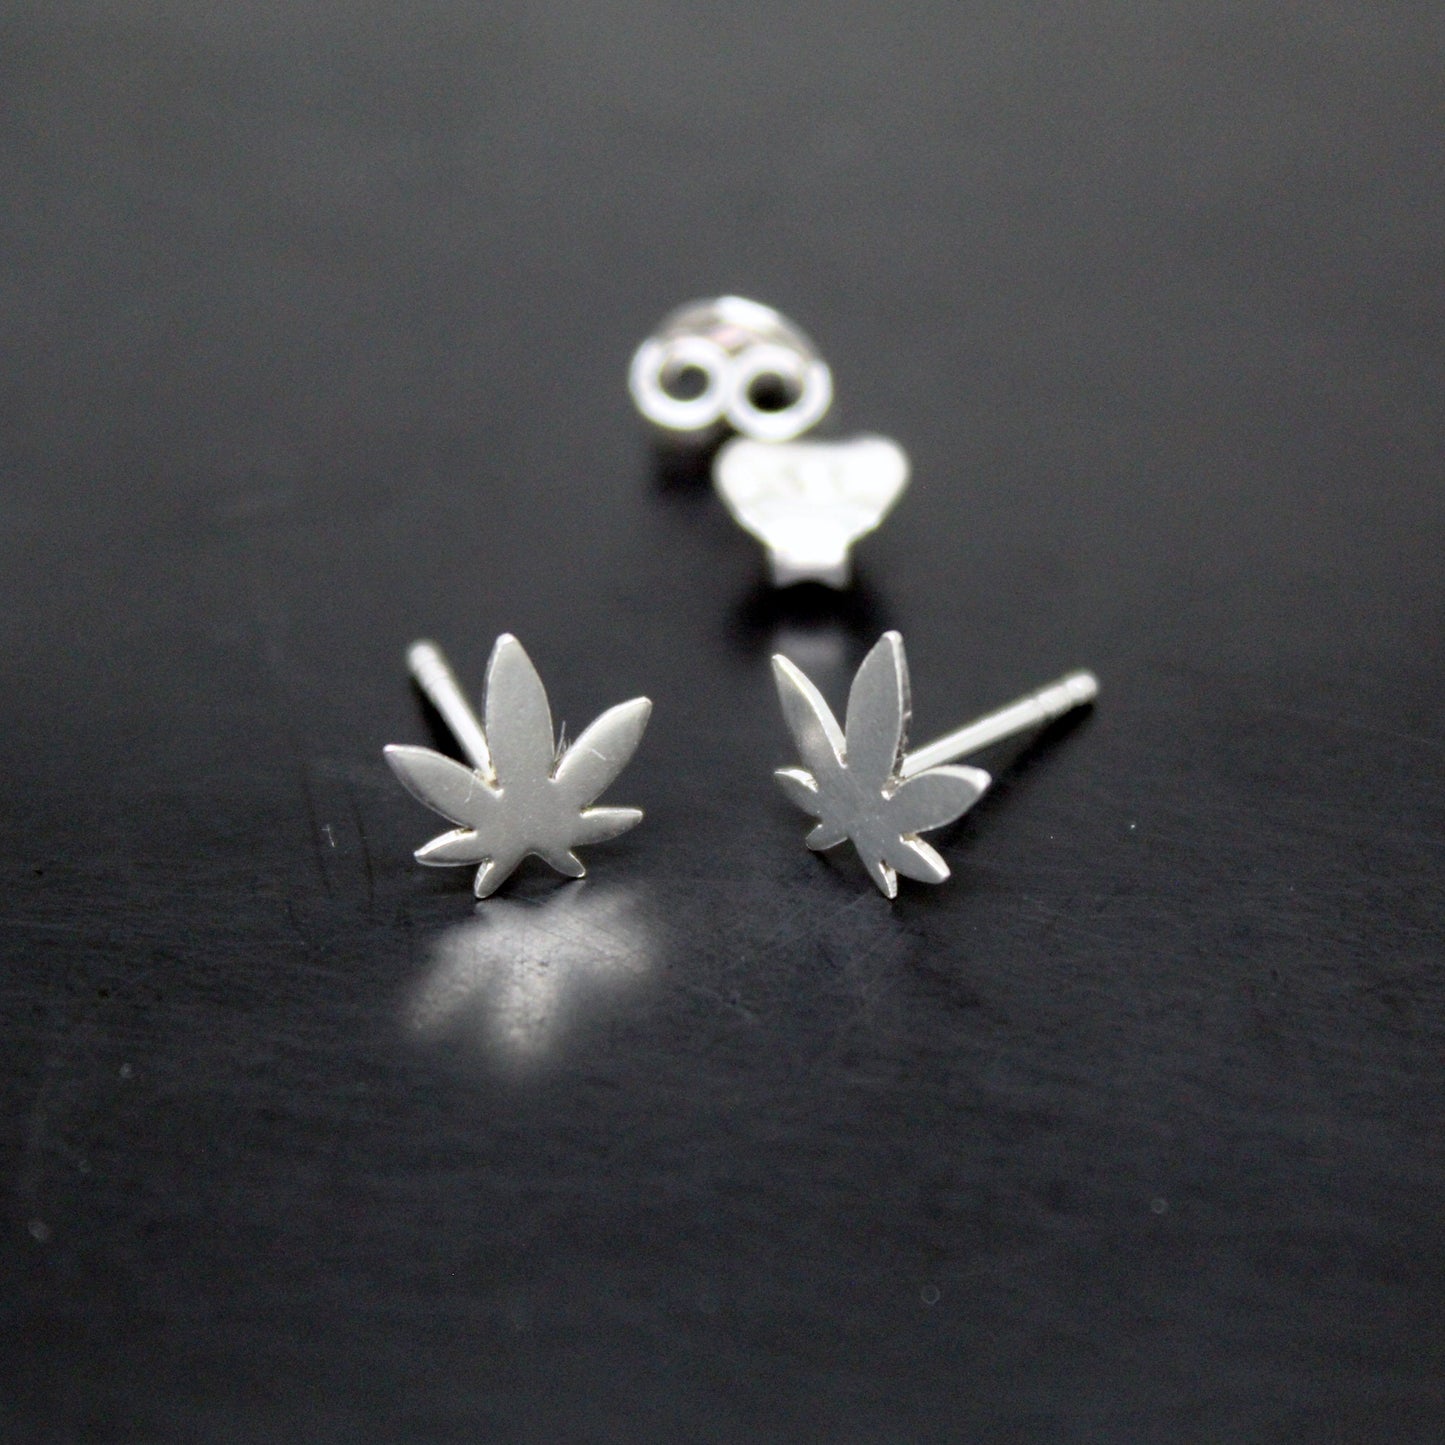 Marijuana leaf earrings in 925 silver